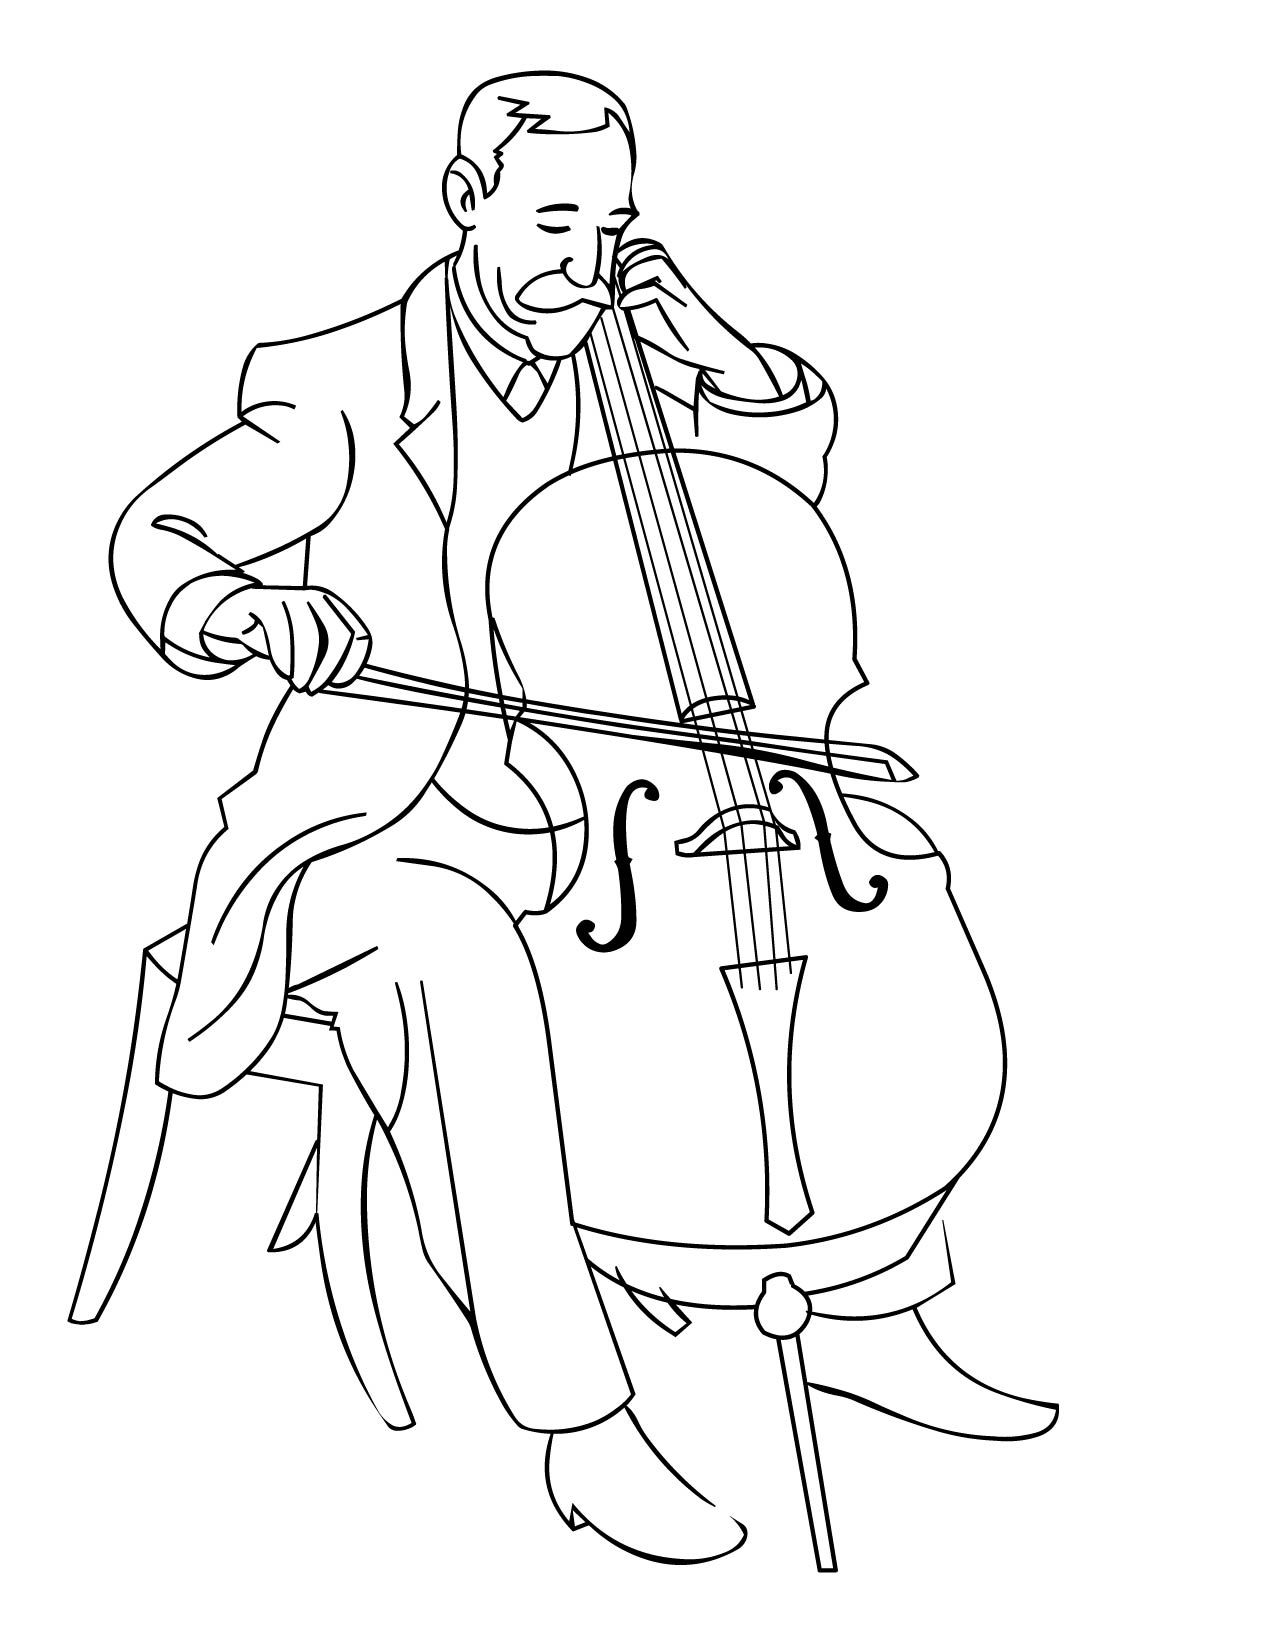 Orchestra Cello